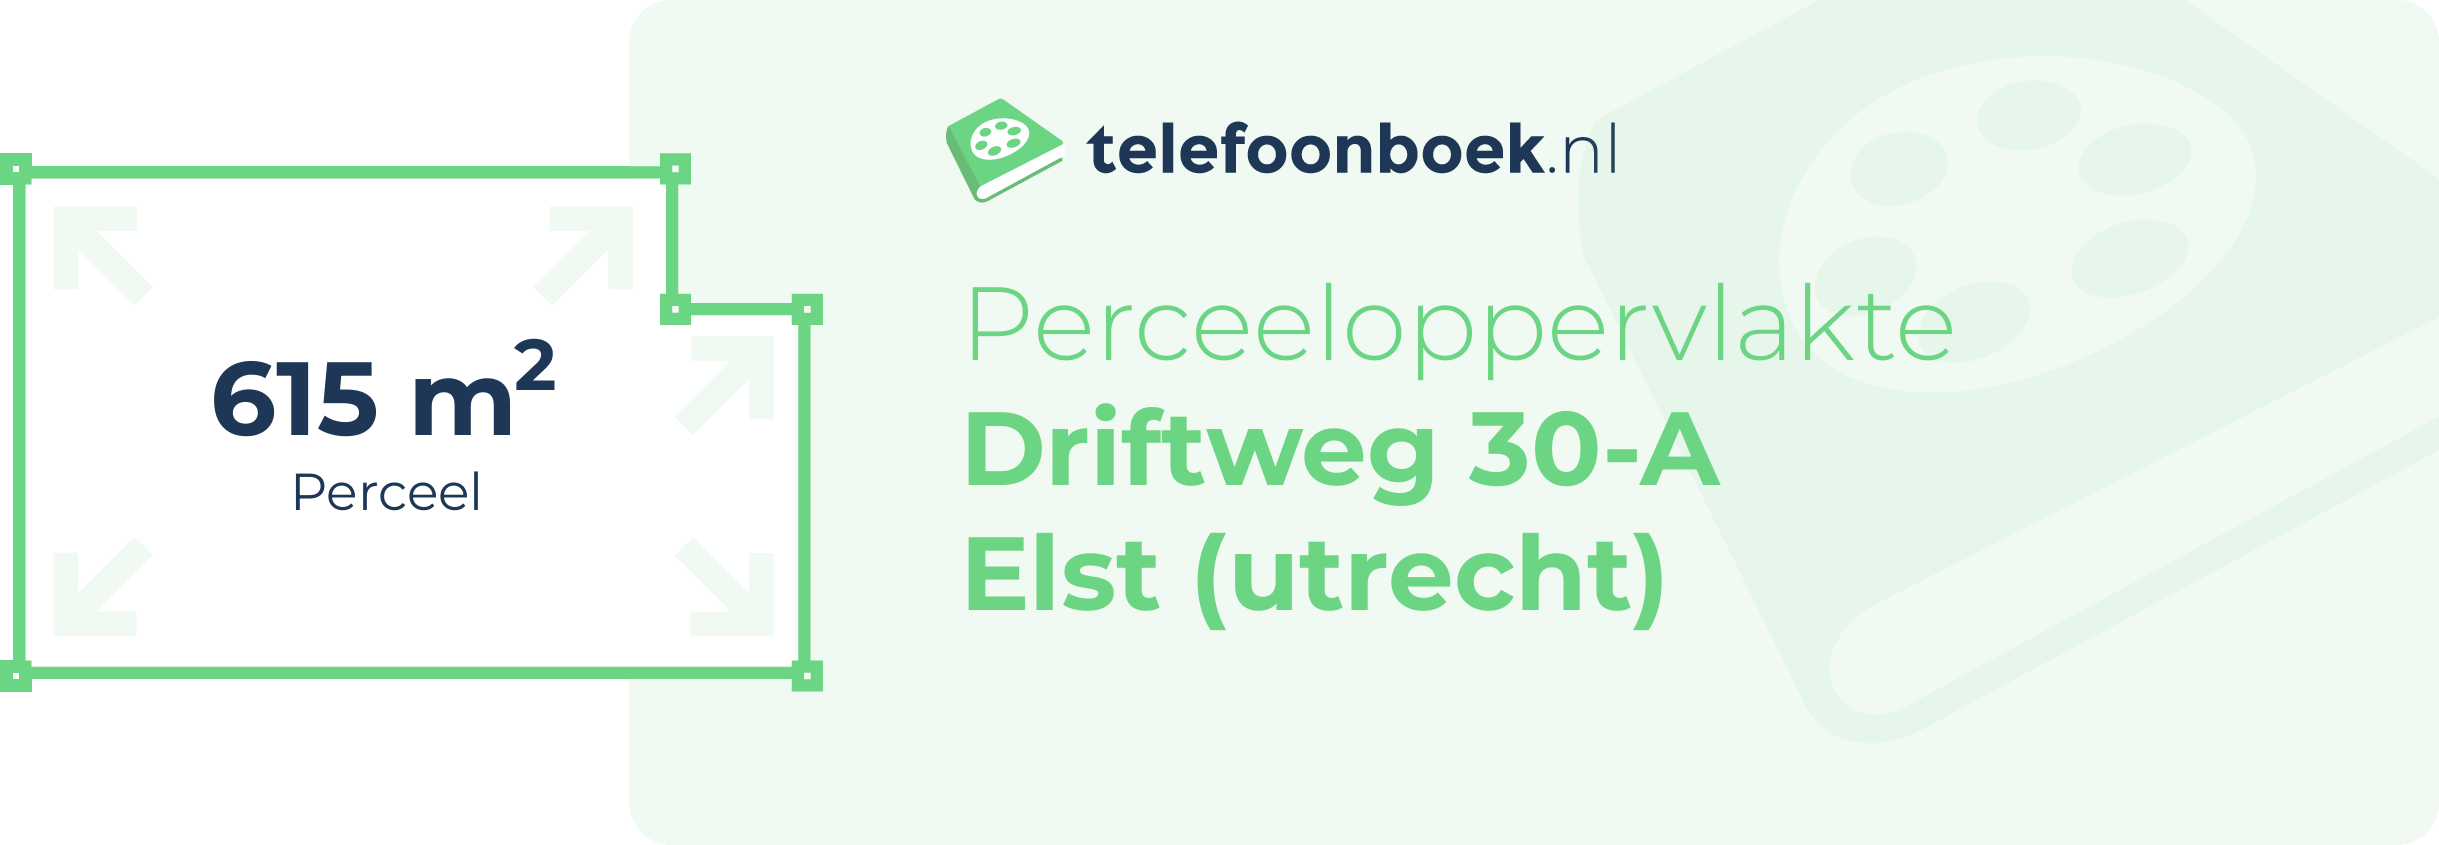 Perceeloppervlakte Driftweg 30-A Elst (Utrecht)